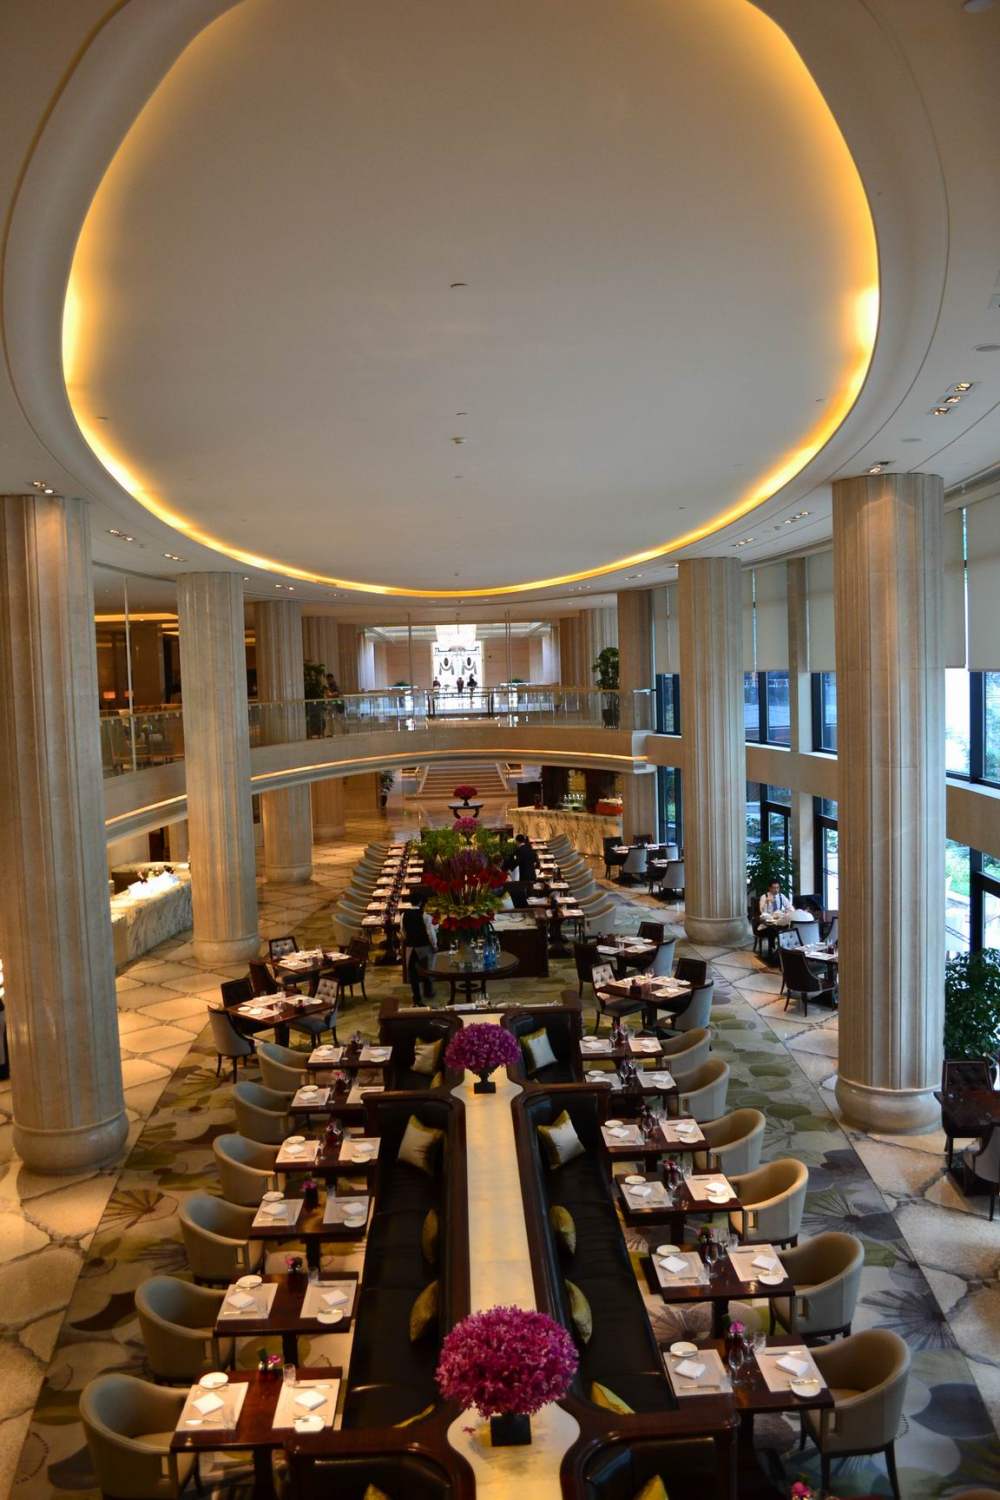 上海华尔道夫酒店(The Waldorf Astoria OnTheBund)(HBA)10.9第10页更新_调整大小 DSC_0520.JPG